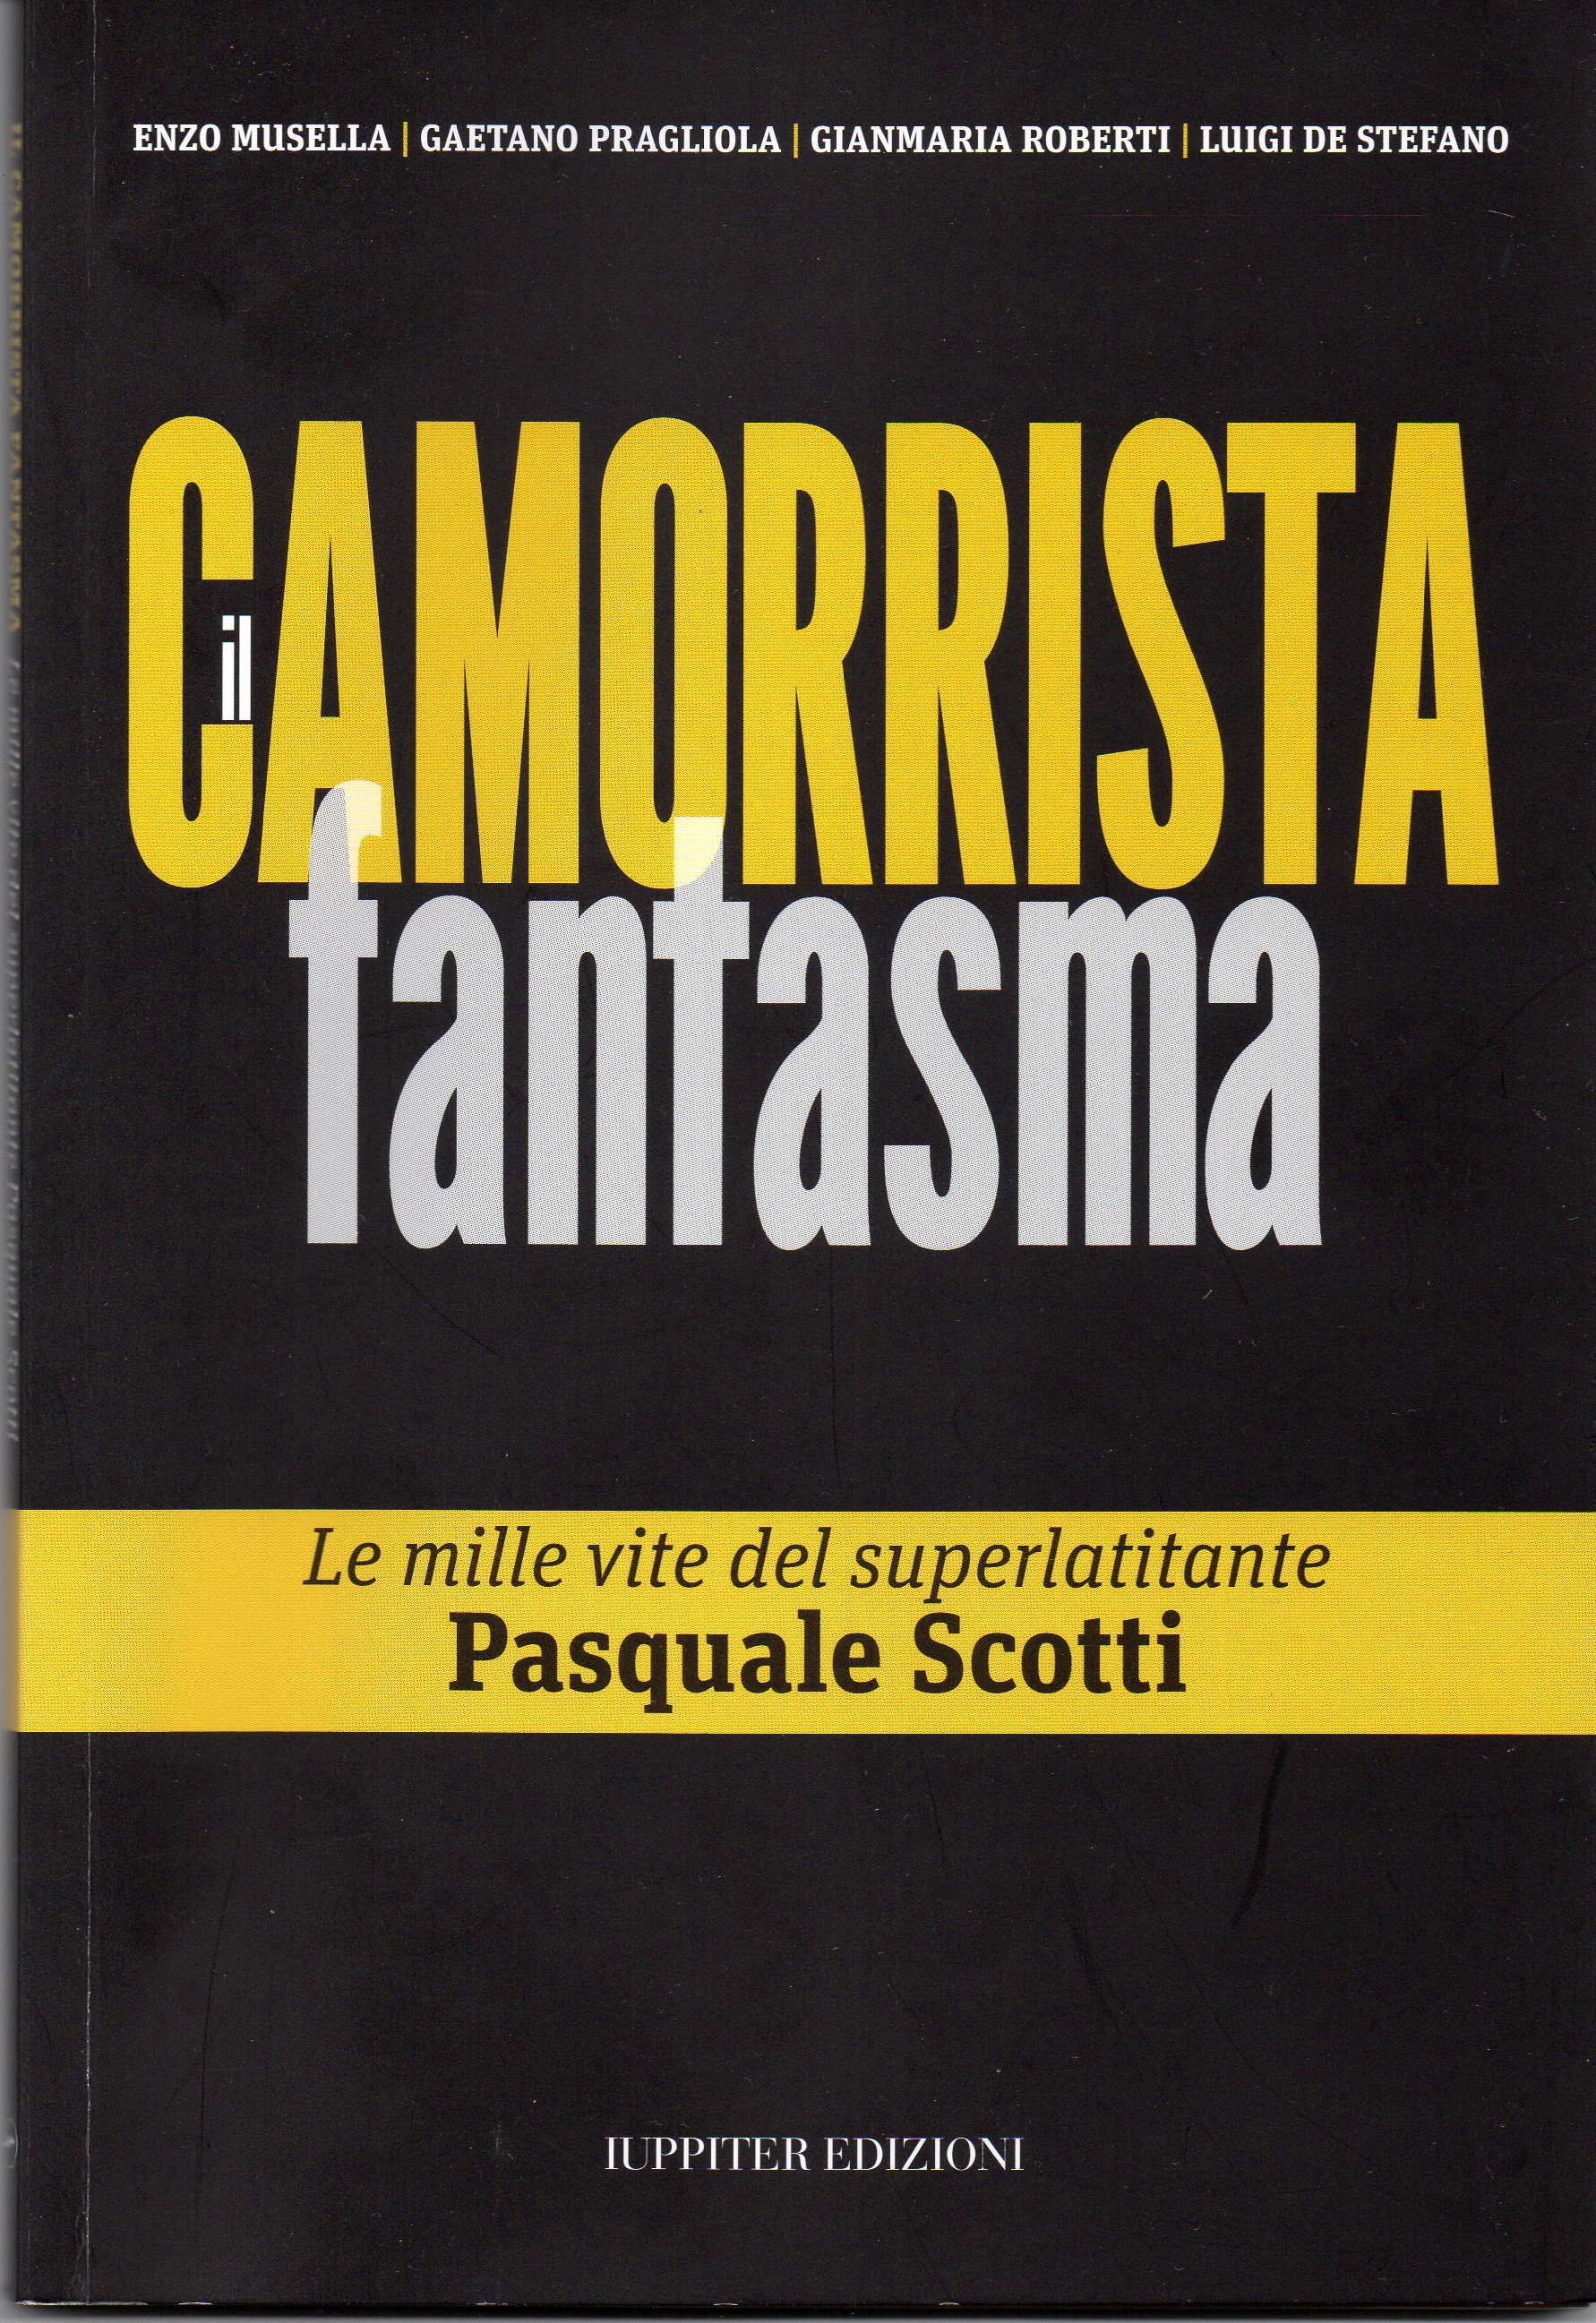 “Il camorrista fantasma”, uscito il libro su Pasquale Scotti, l’ex luogotenente di Raffaele Cutolo